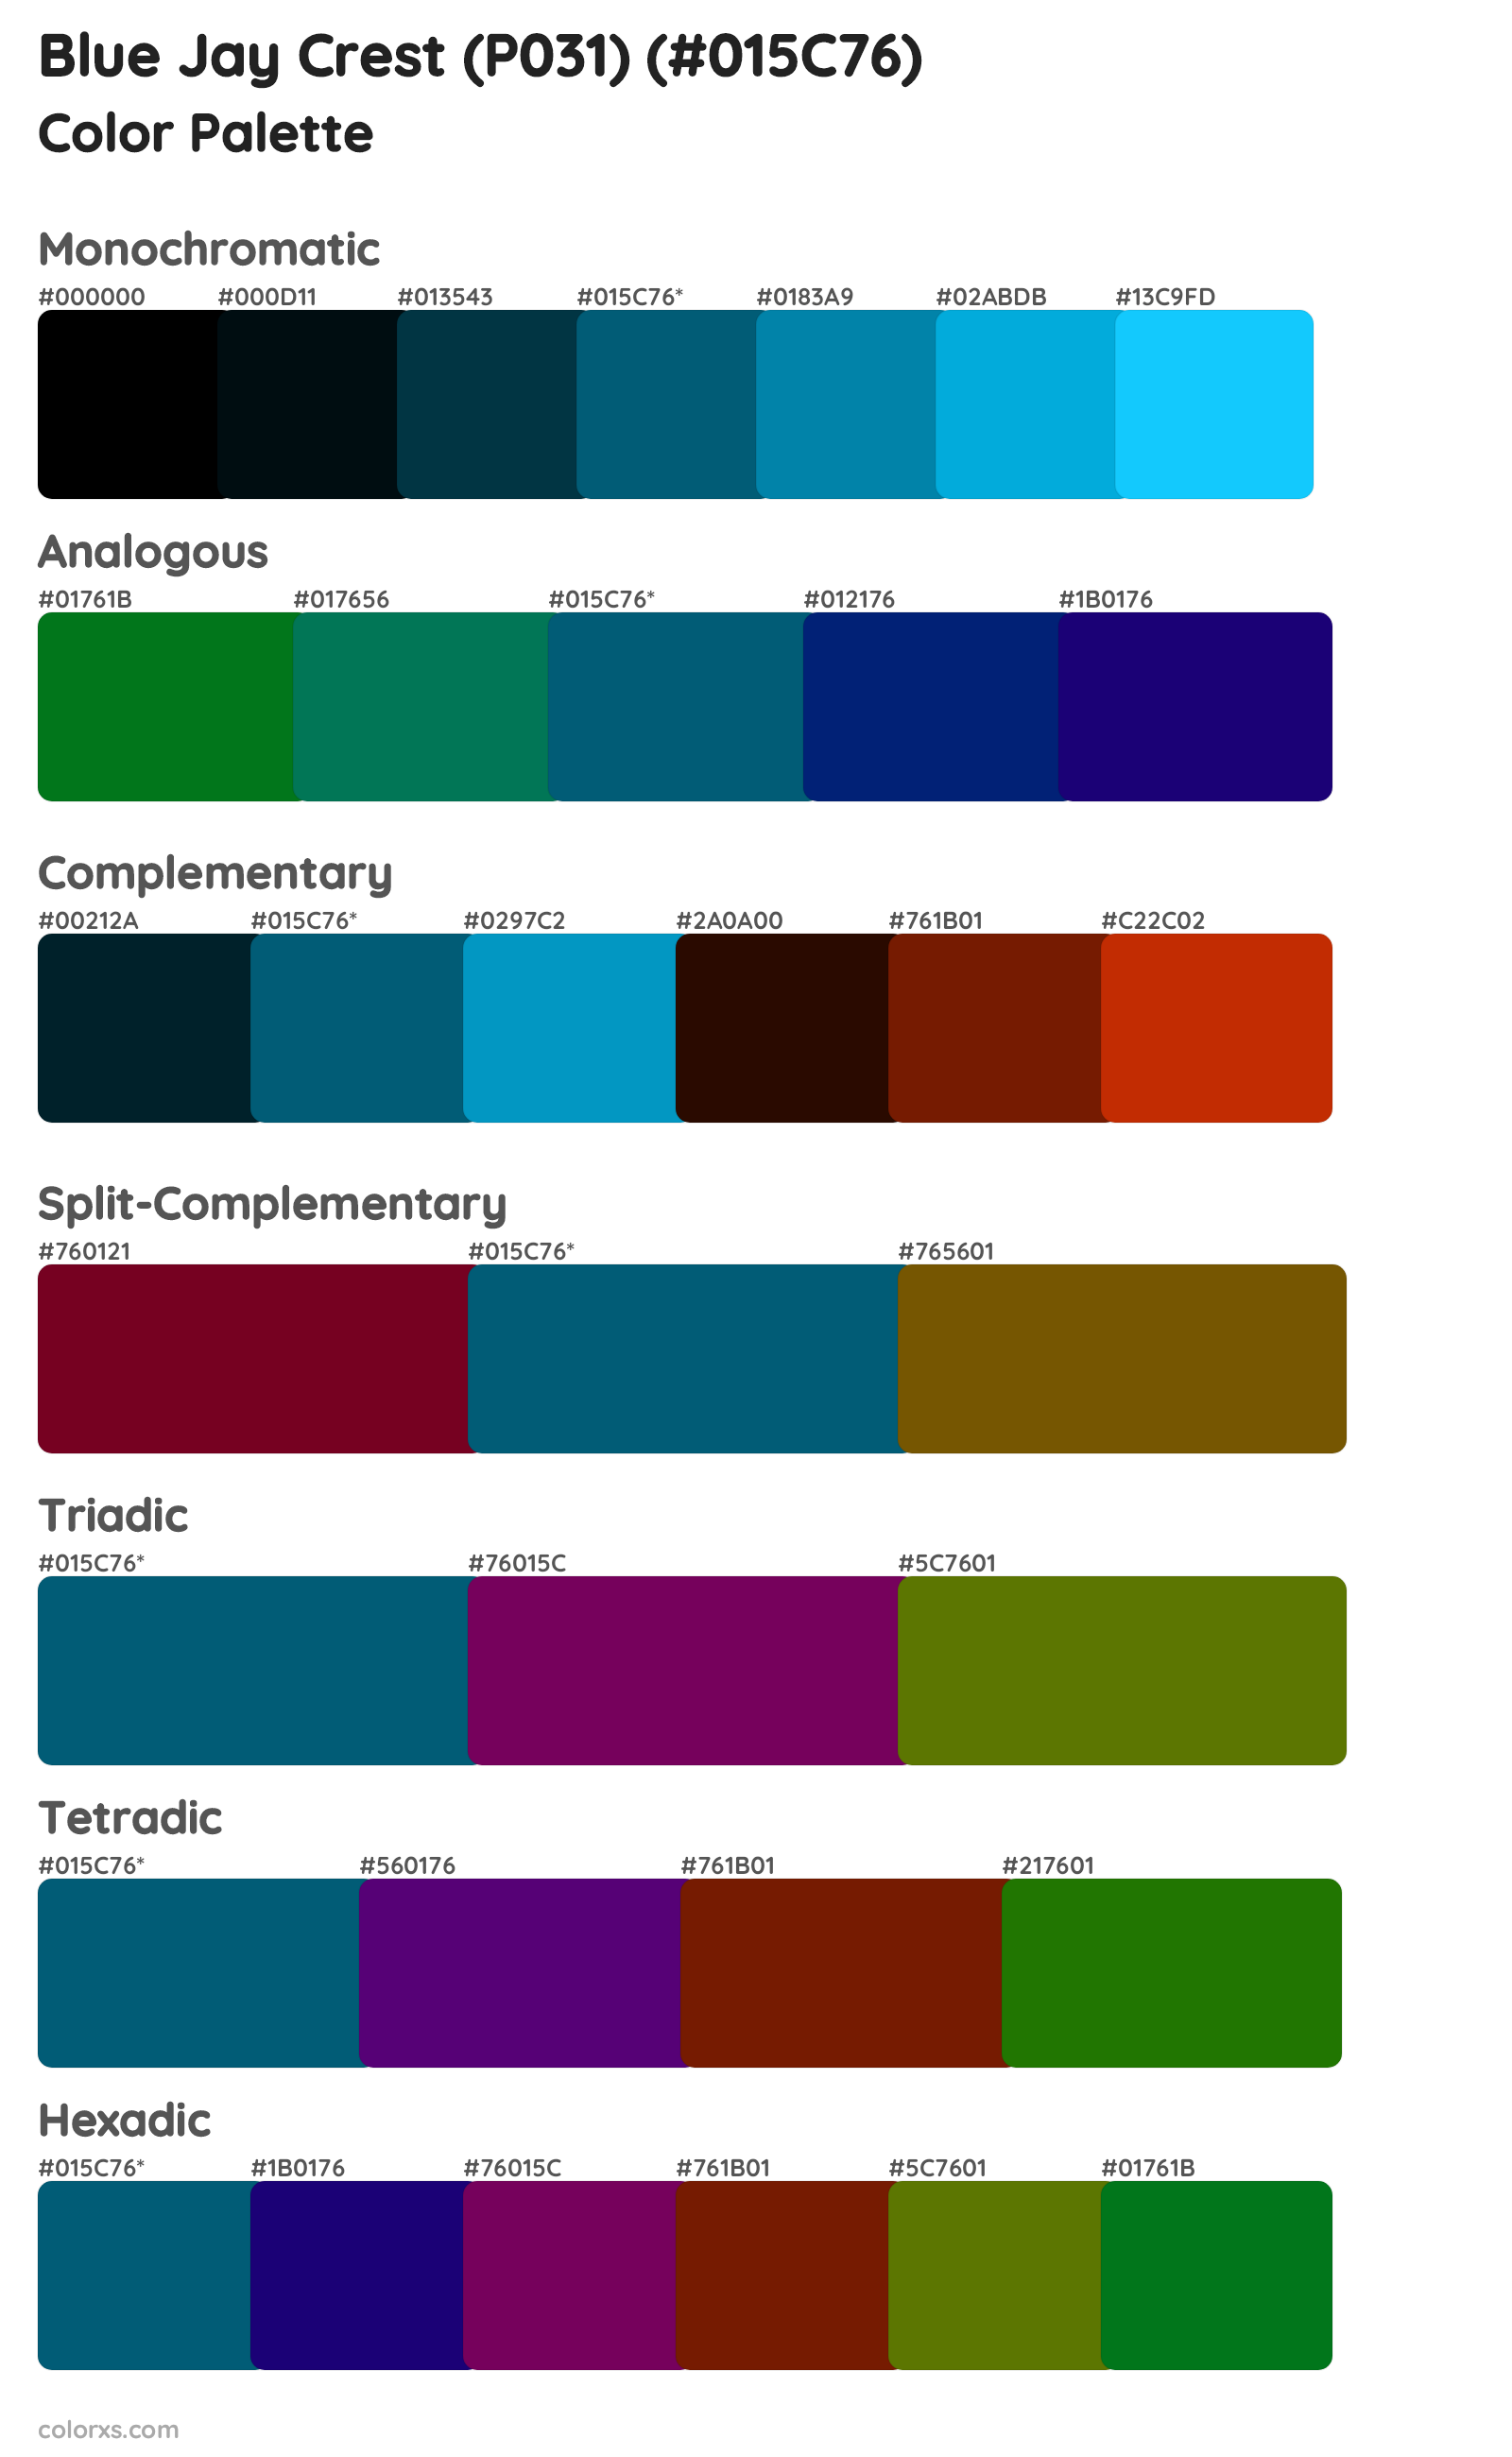 Blue Jay Crest (P031) Color Scheme Palettes